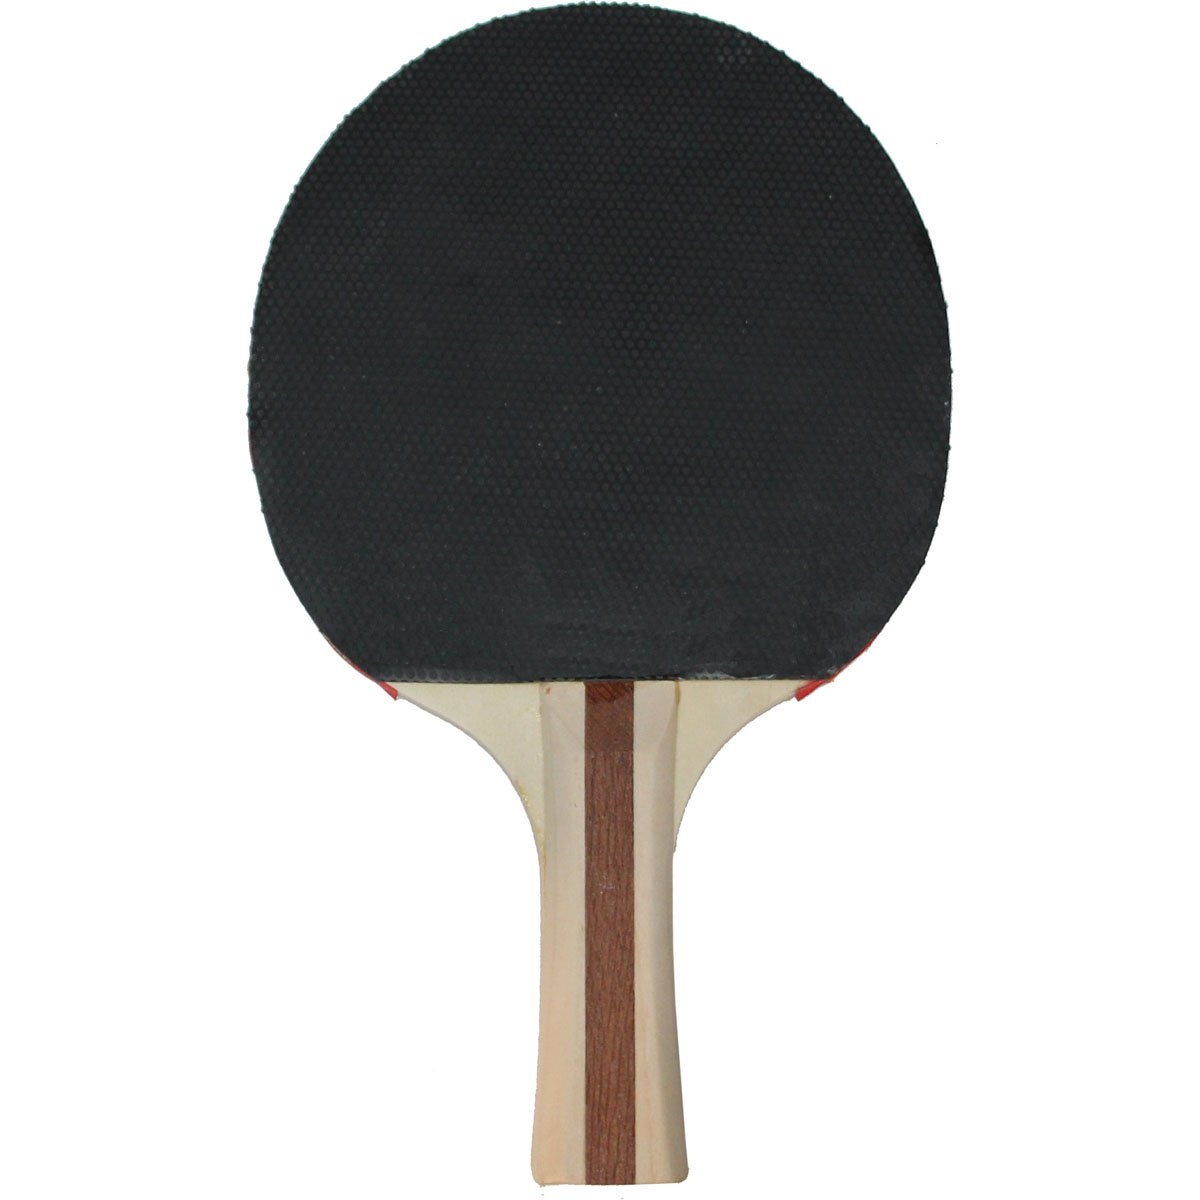 Raqueta Individual Ping Pong Larca